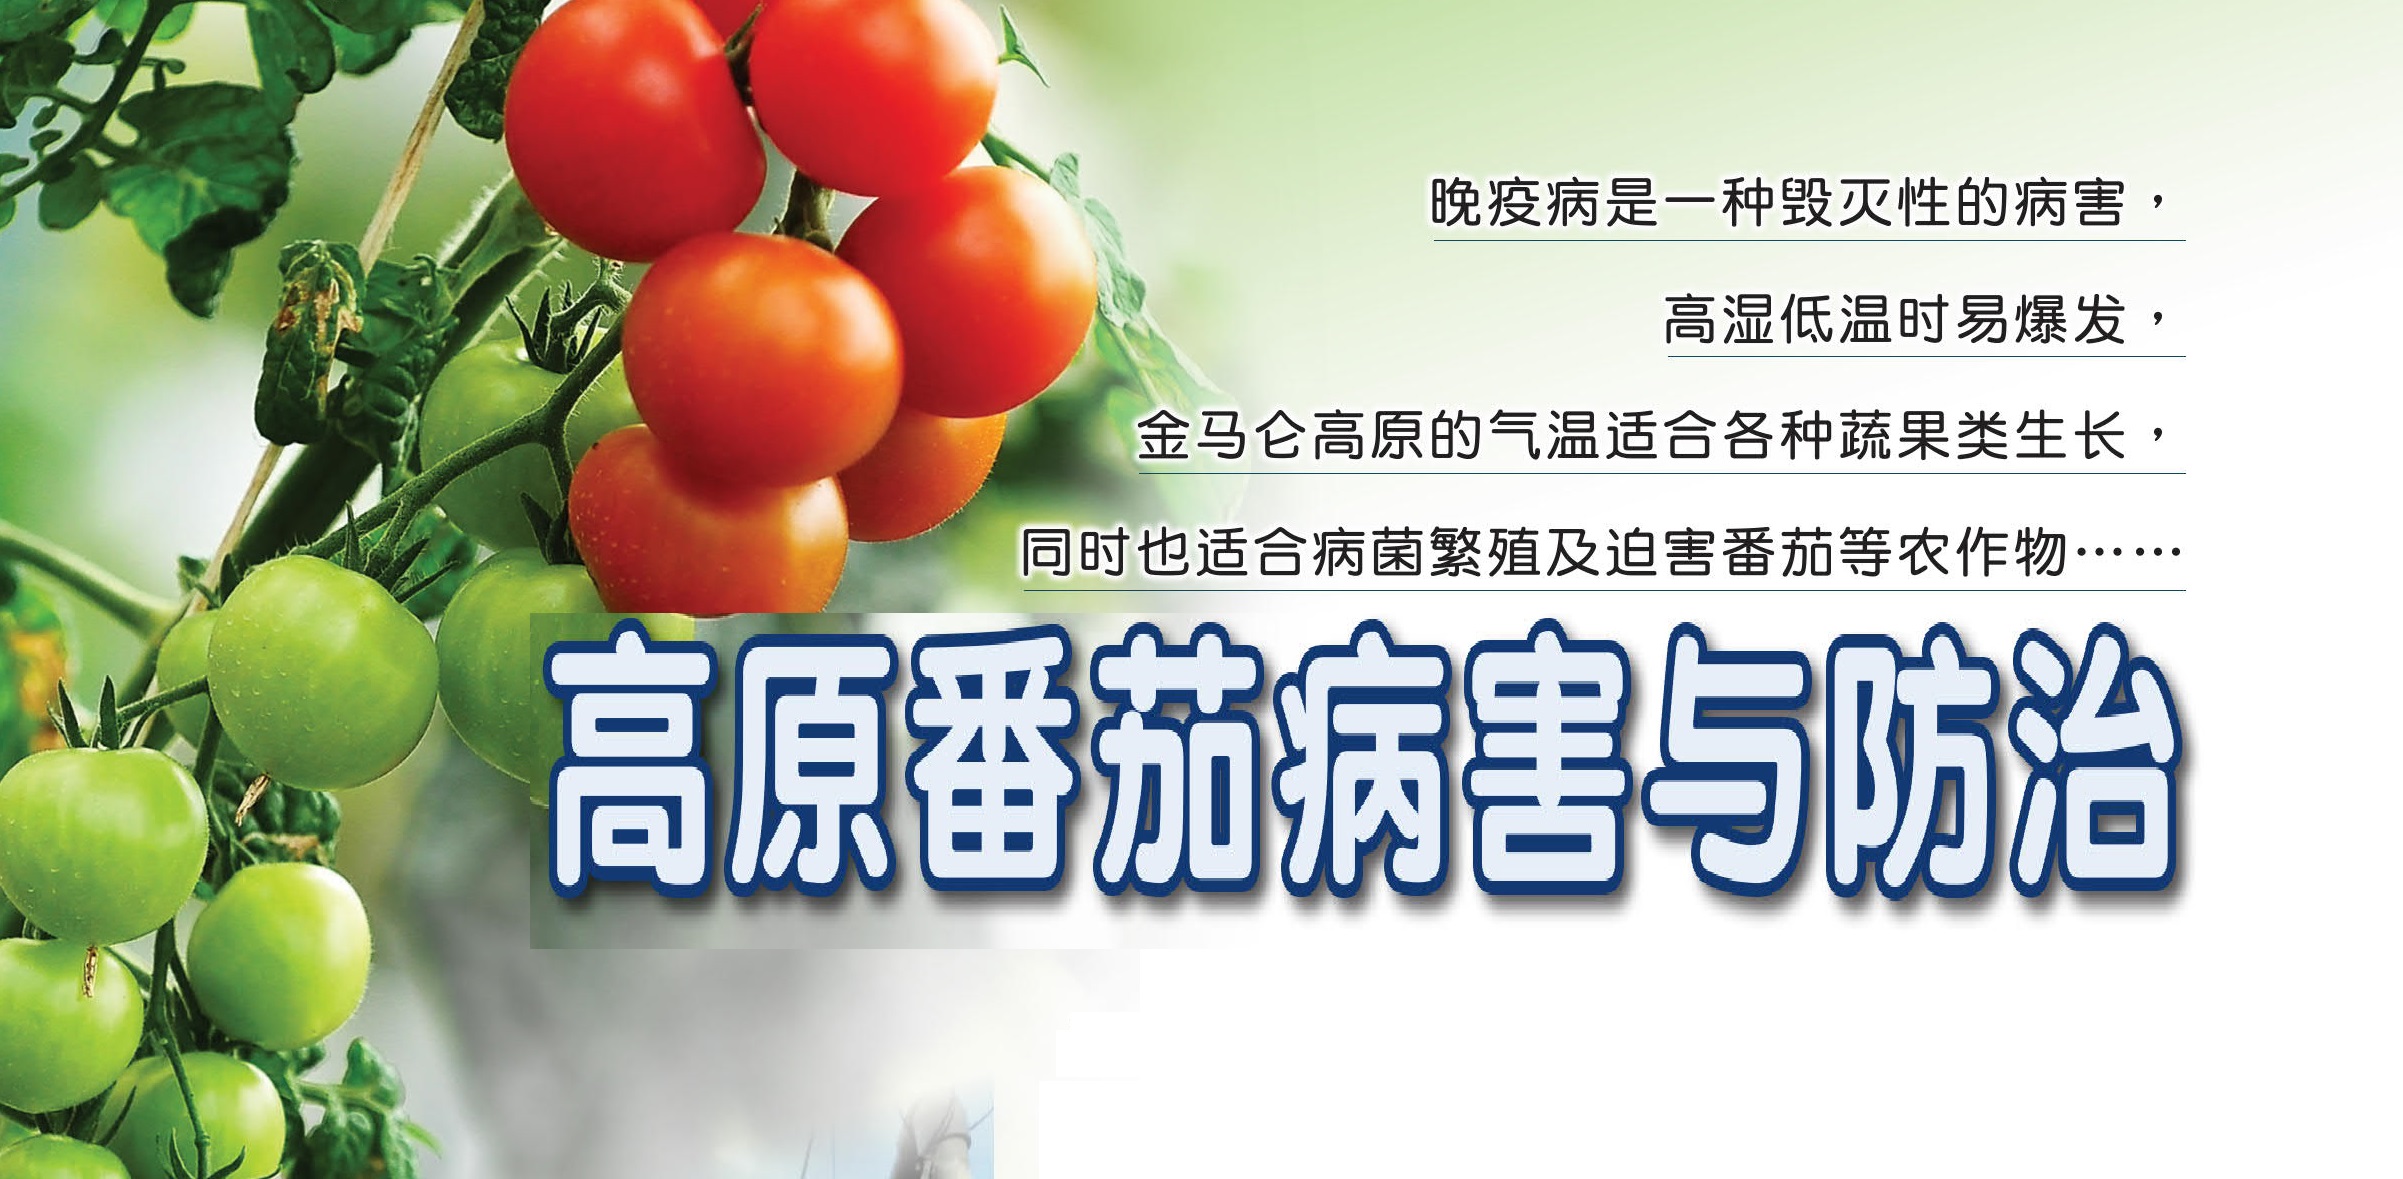 高原番茄病害与防治 - 农牧世界